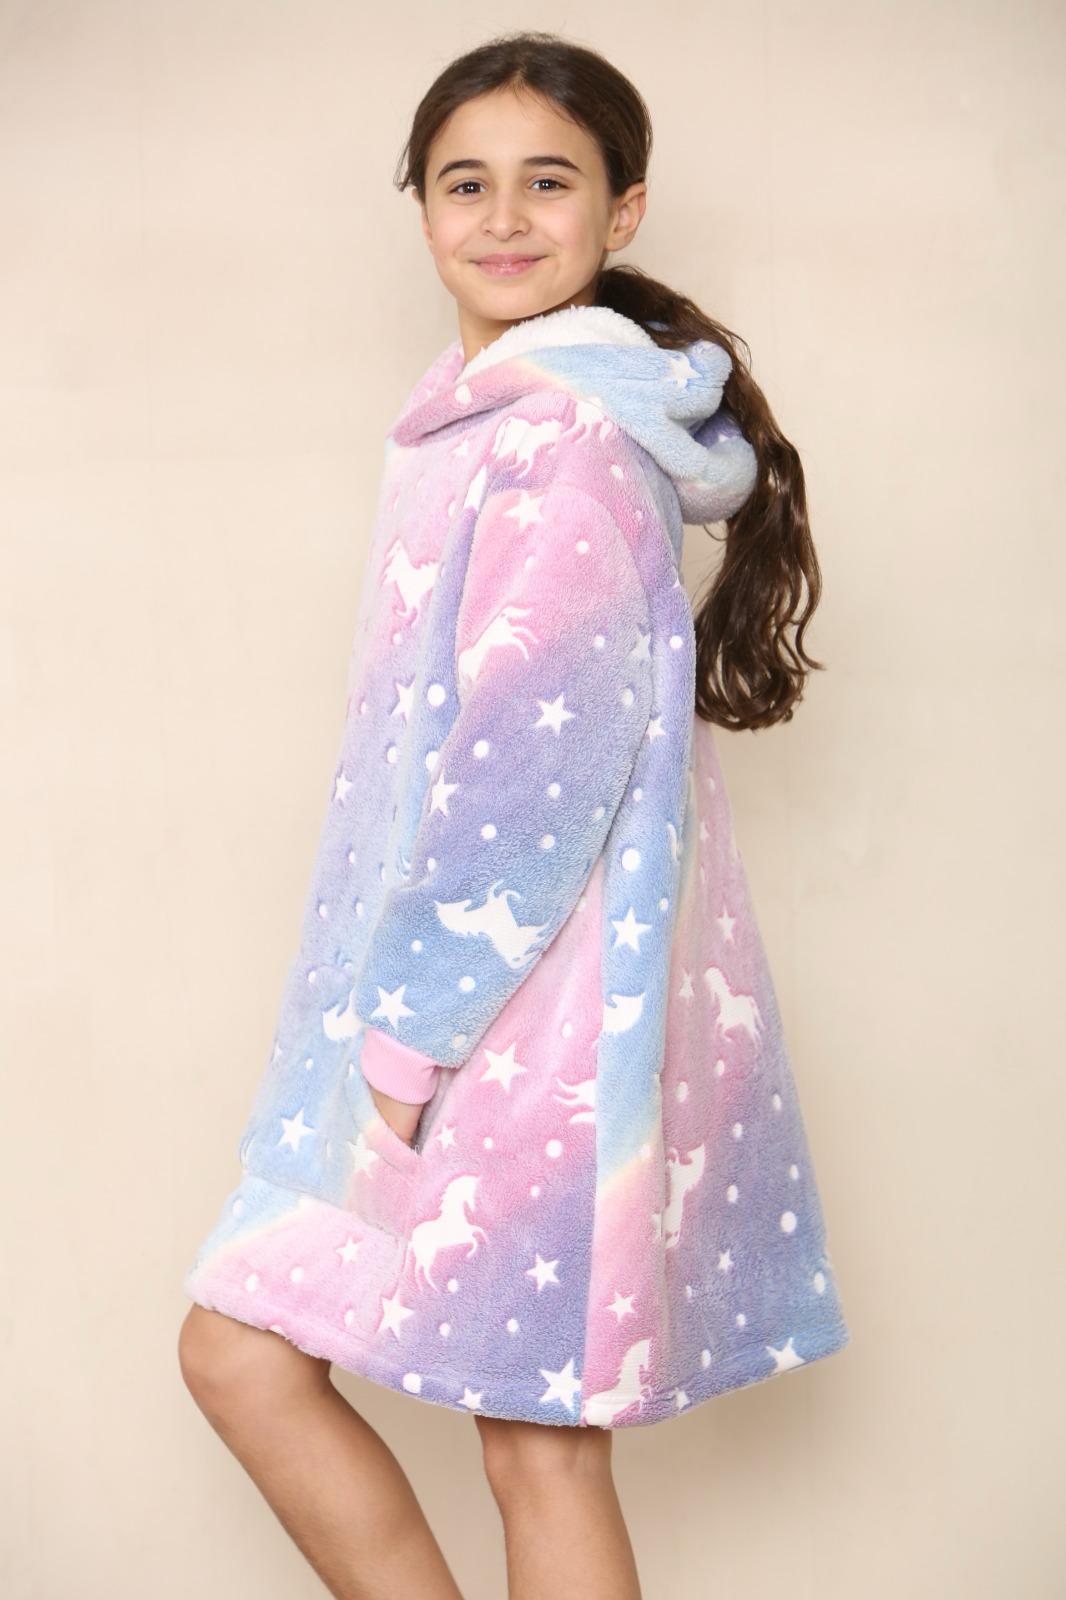 Kids Oversized Hoodie Glow in Dark Soft Blanket Hoodies UK